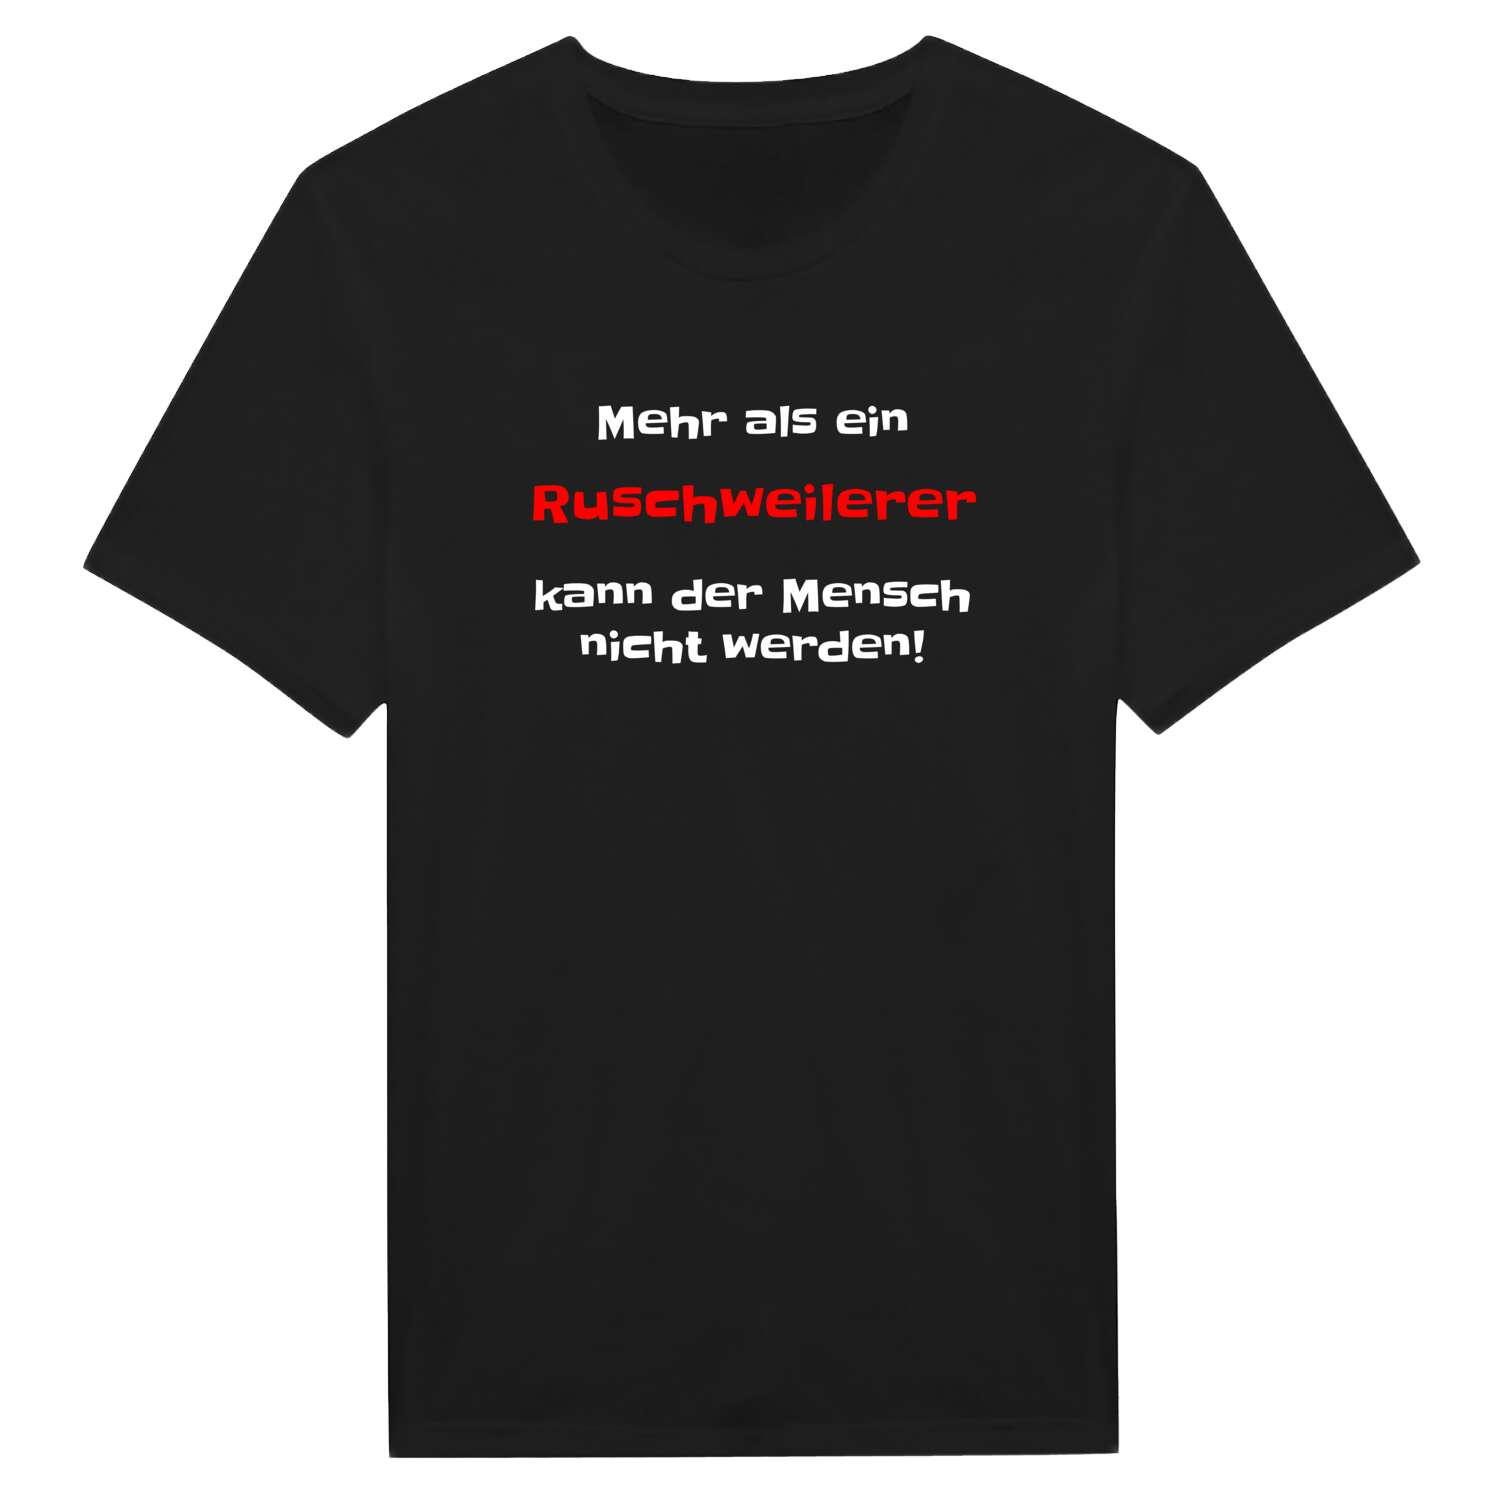 Ruschweiler T-Shirt »Mehr als ein«